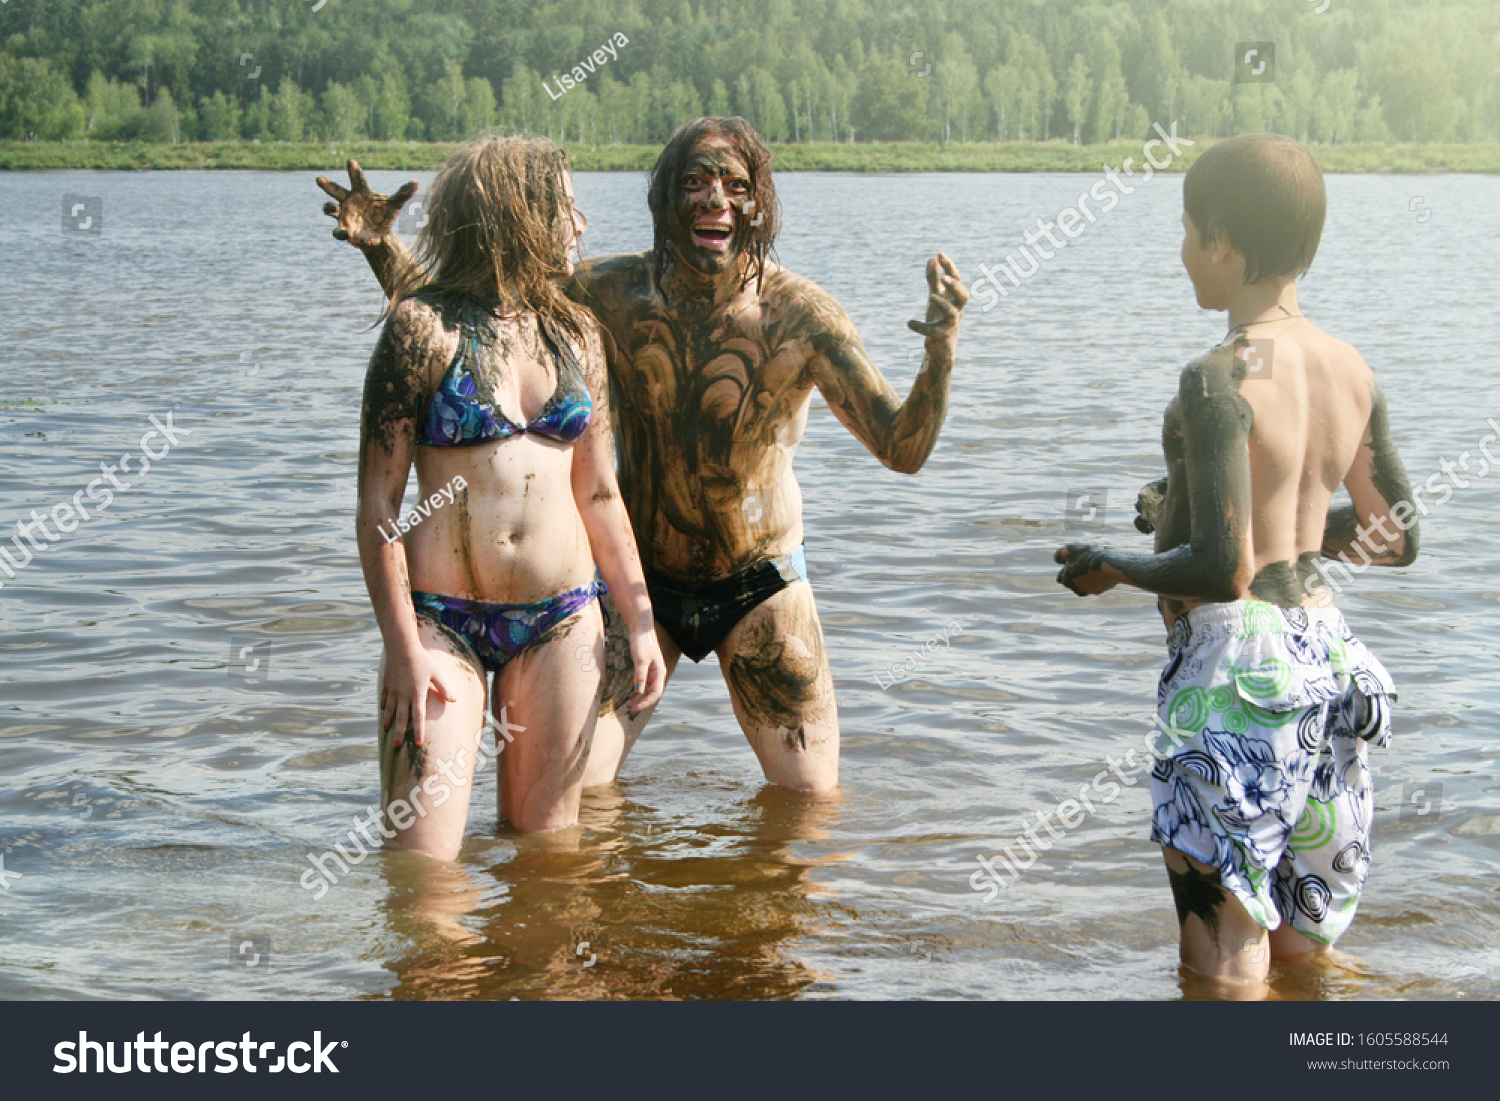 Russian Nudist Fun